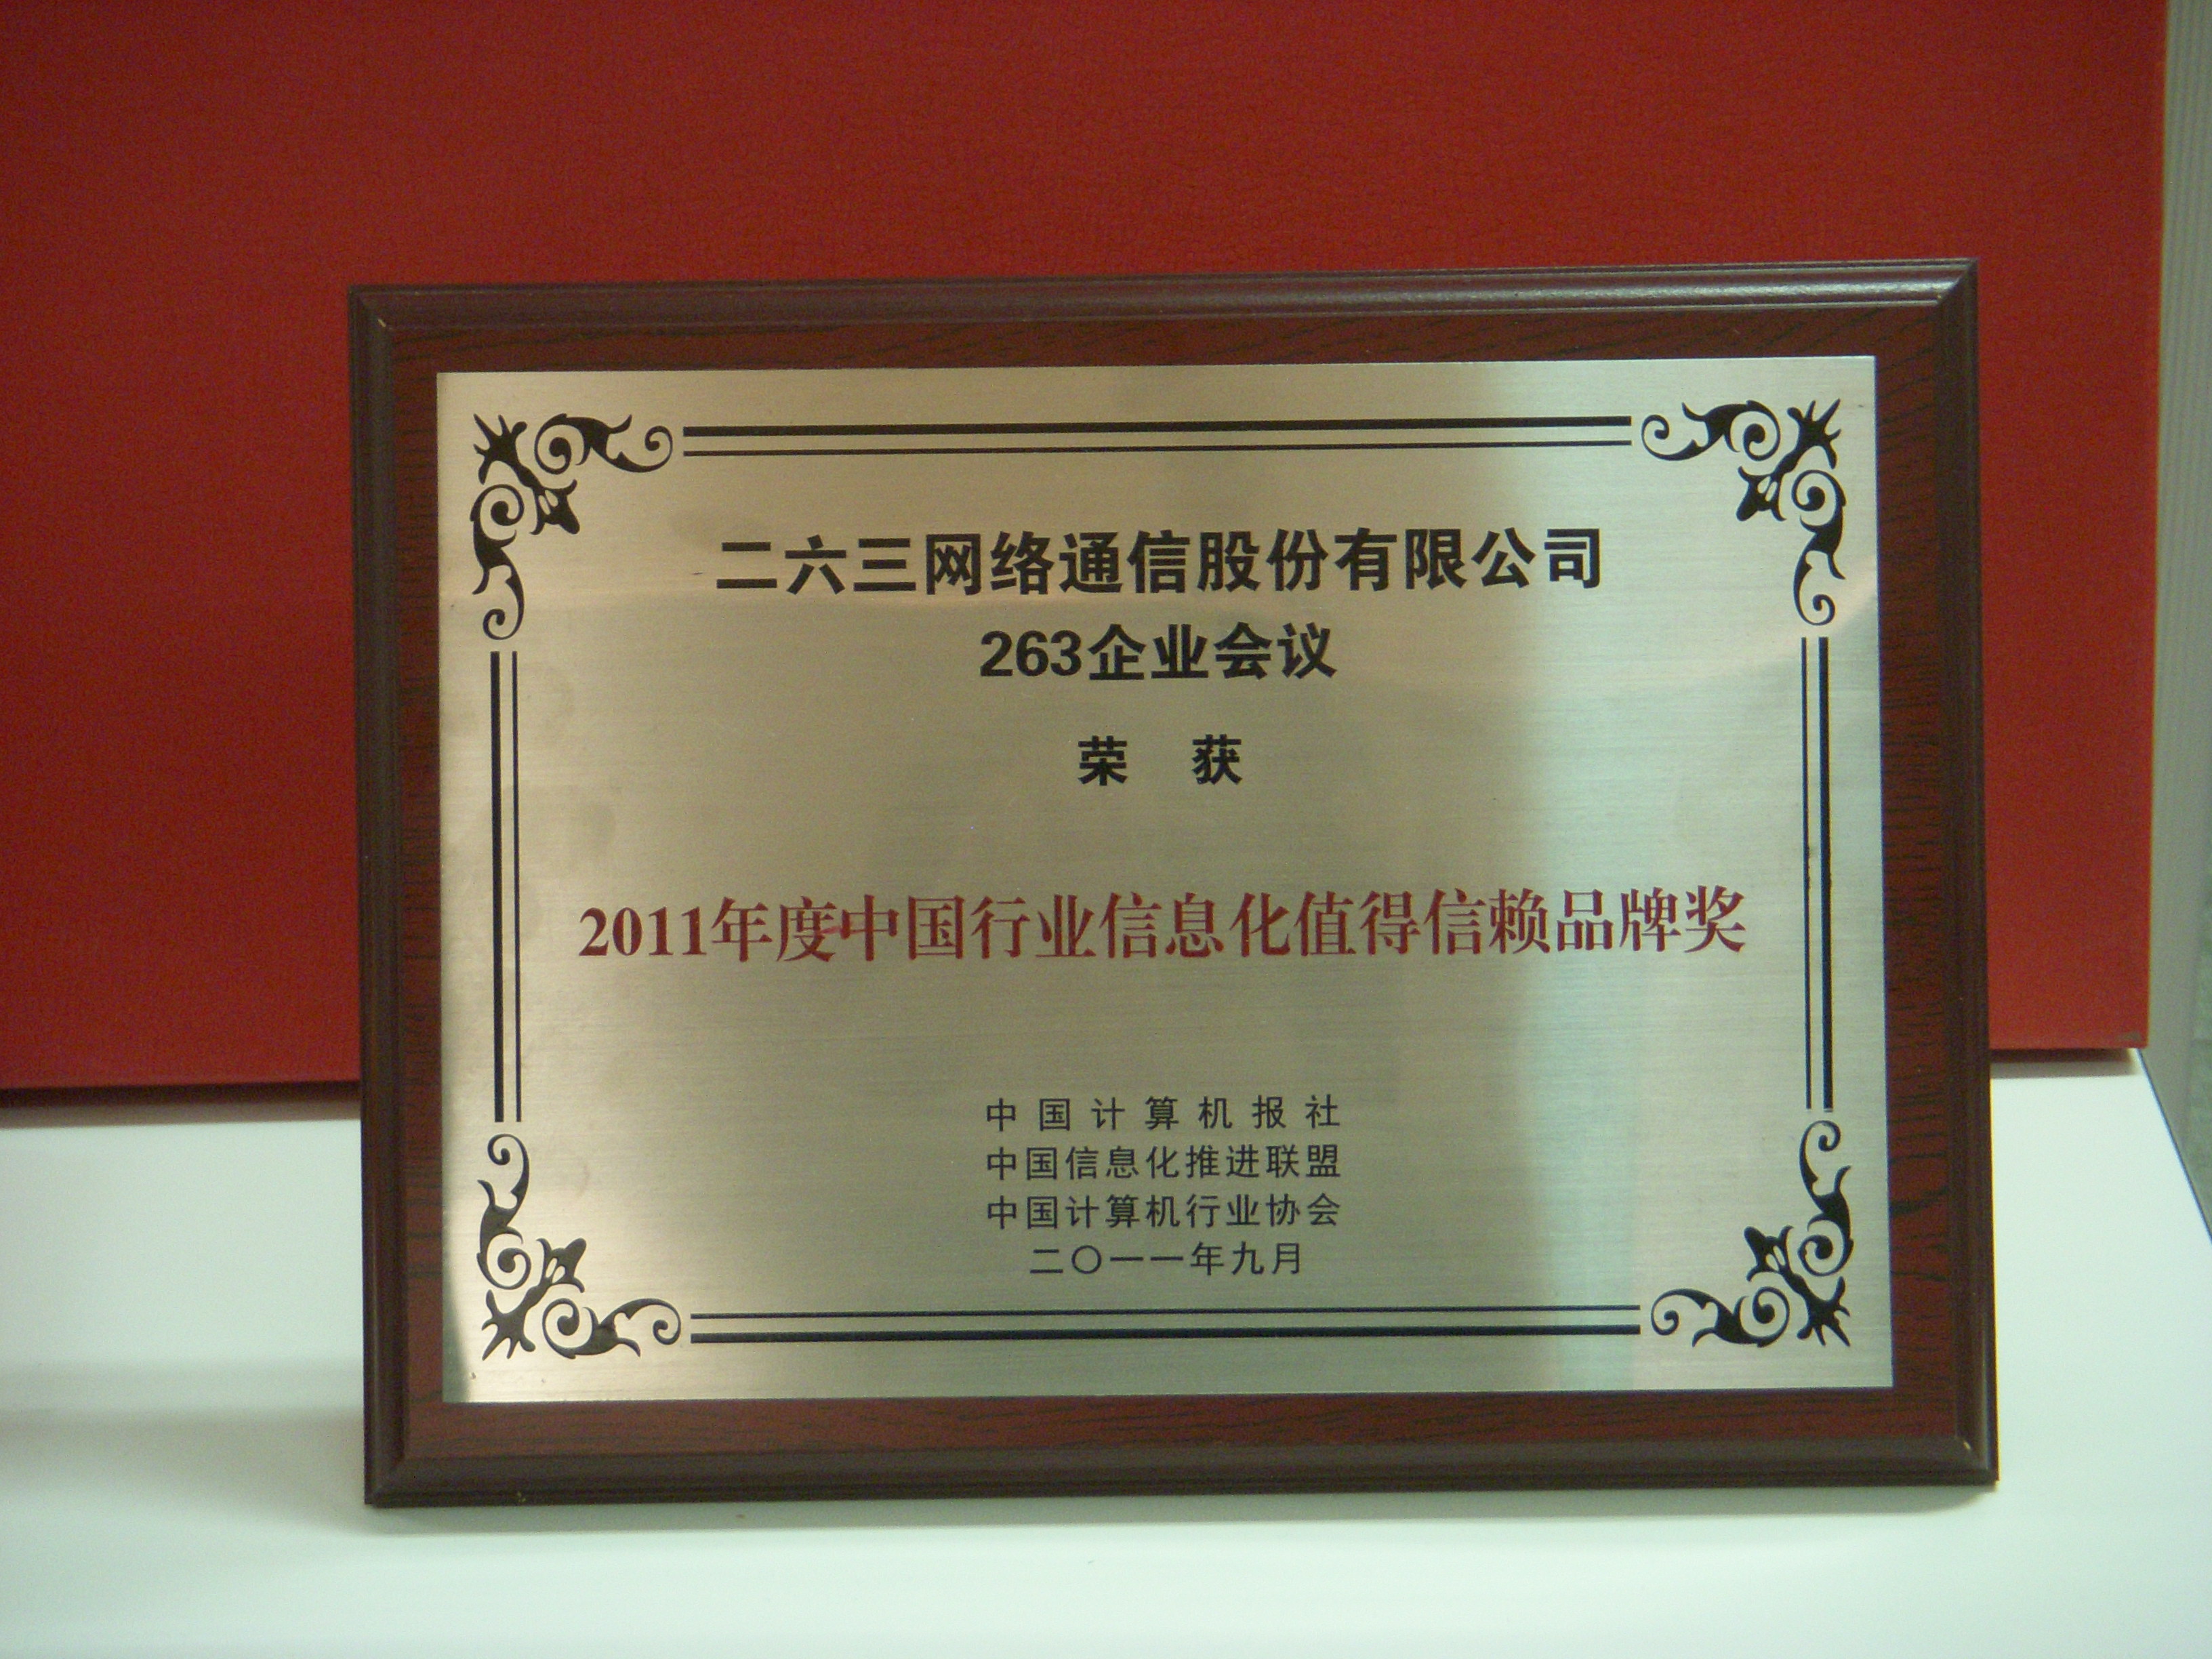 2011年度中國行業信息化值得信賴品牌獎